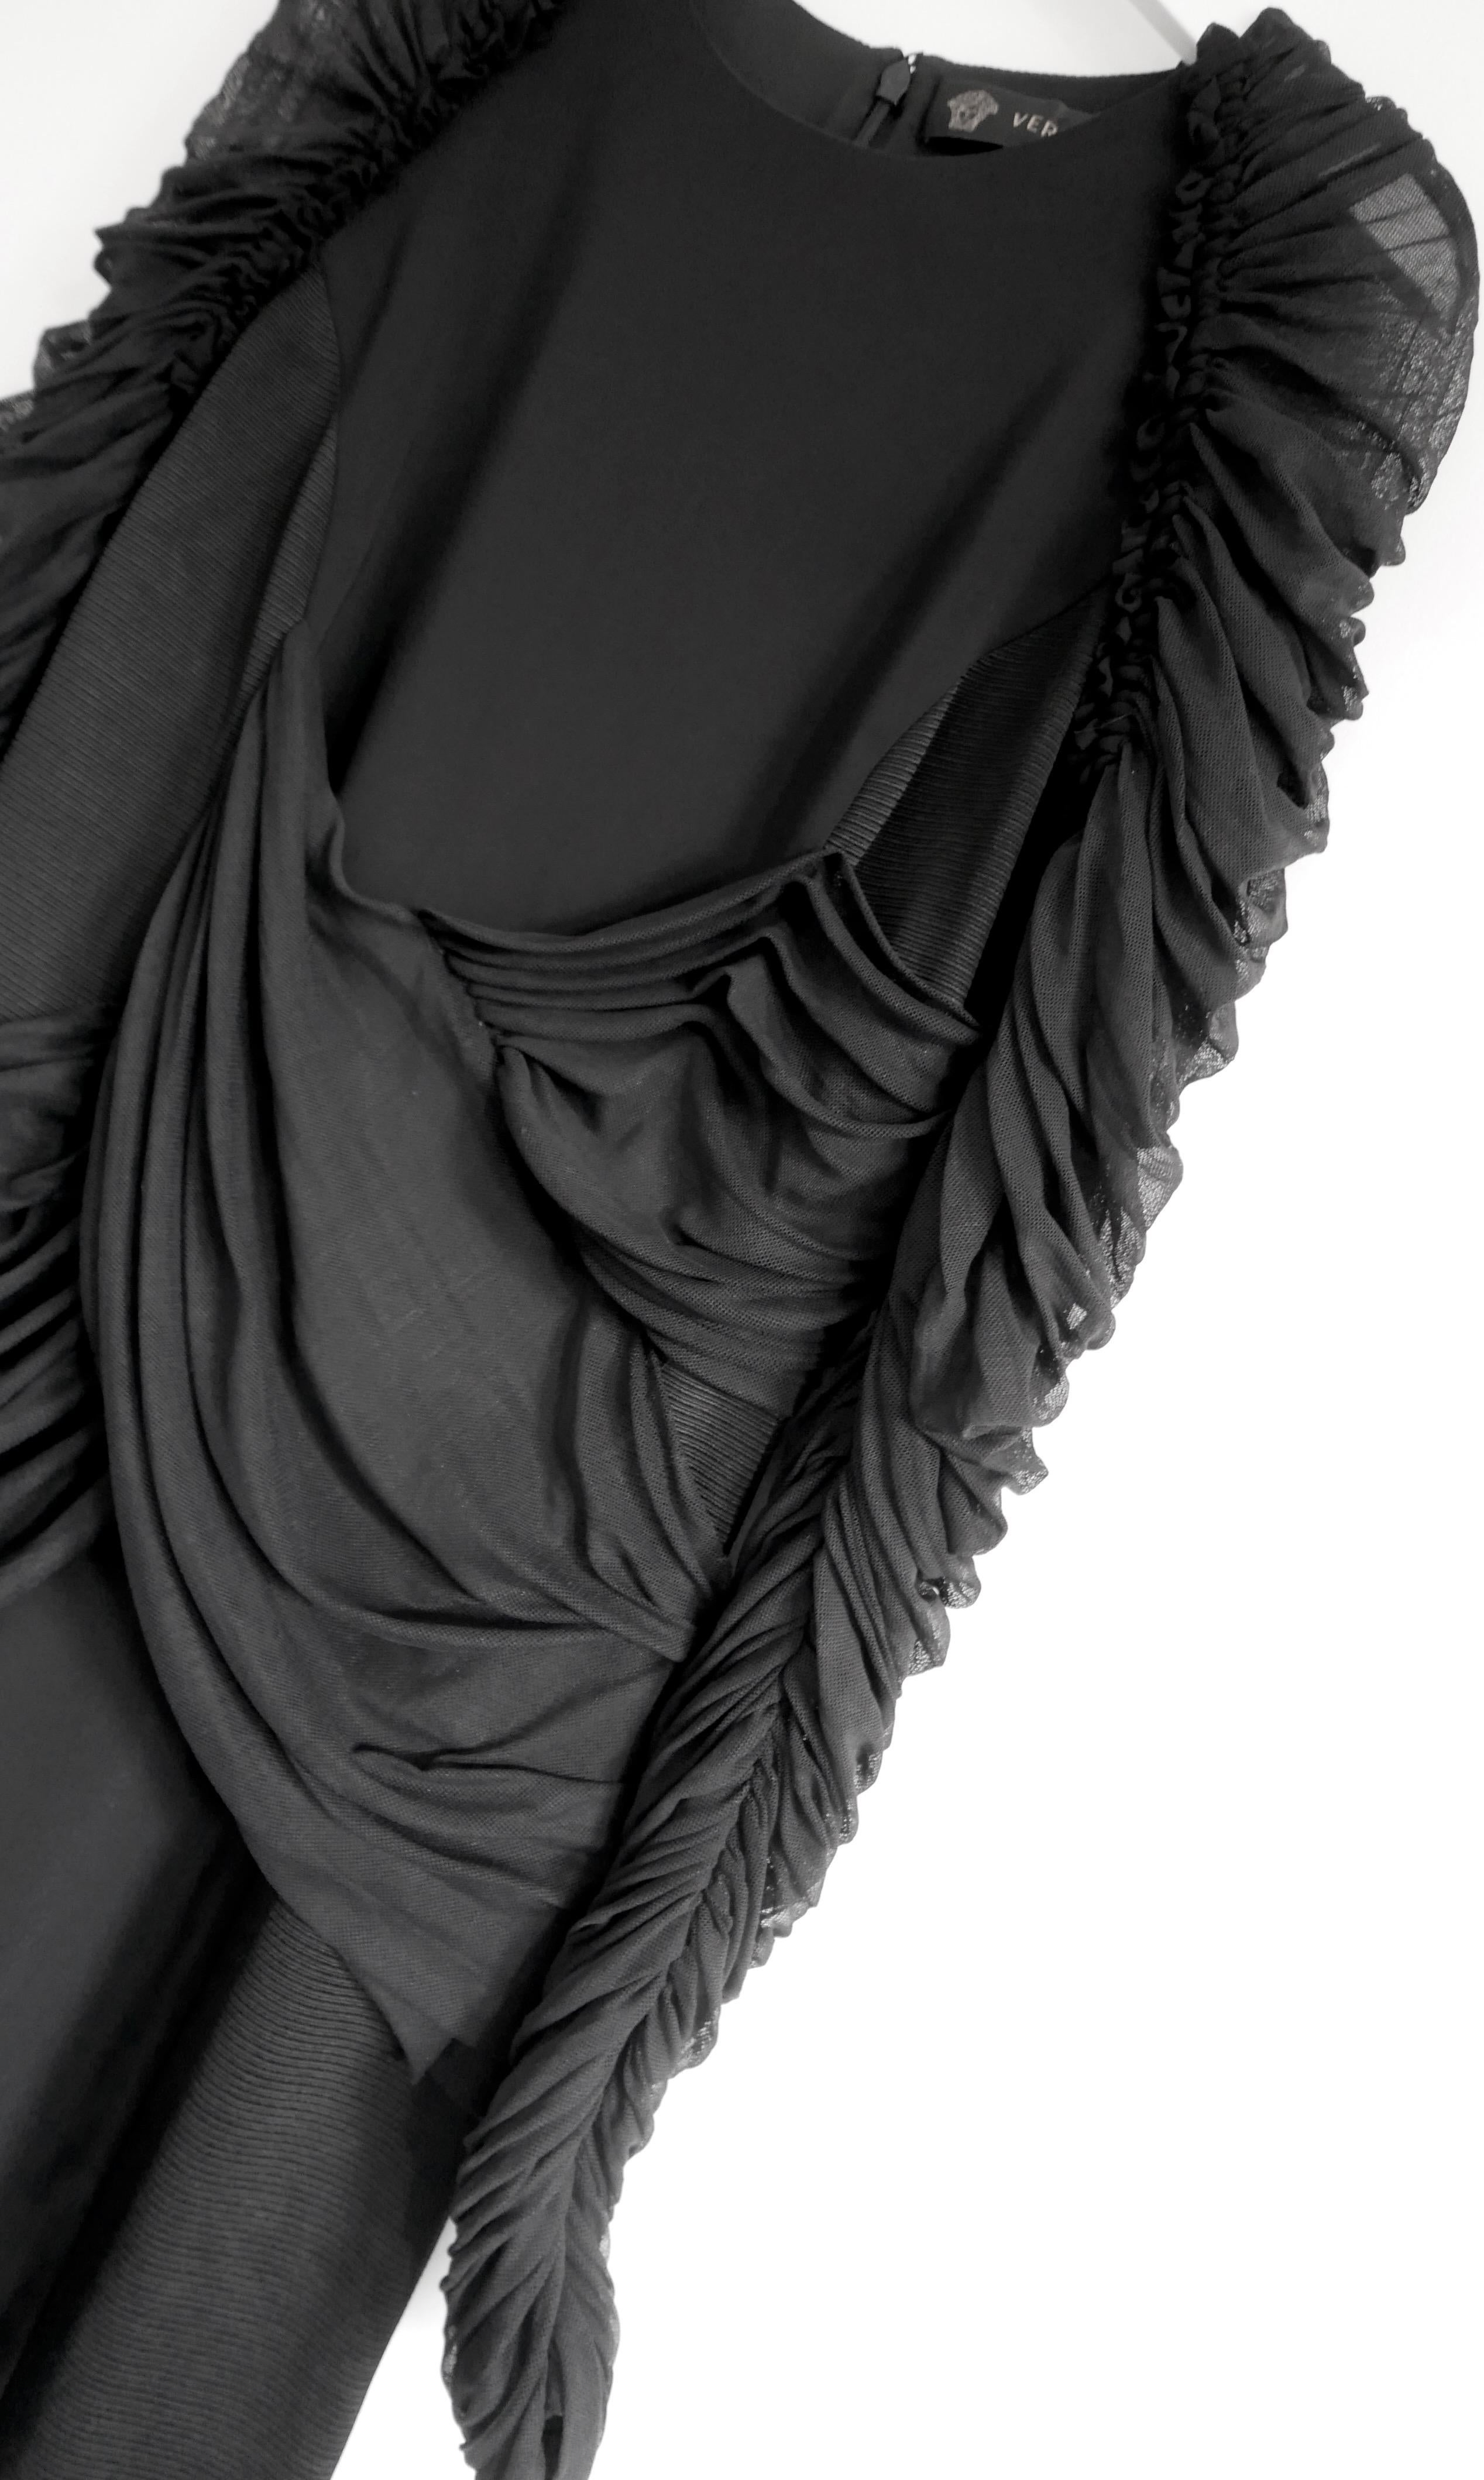 Robe à manches en tulle de Versace super sexy et dramatique - de la collection Resort 2017. Acheté pour plus de £1500 et porté deux fois - a été nettoyé à sec. Confectionnée en crêpe noir épais et extensible de viscose et d'élasthanne avec des